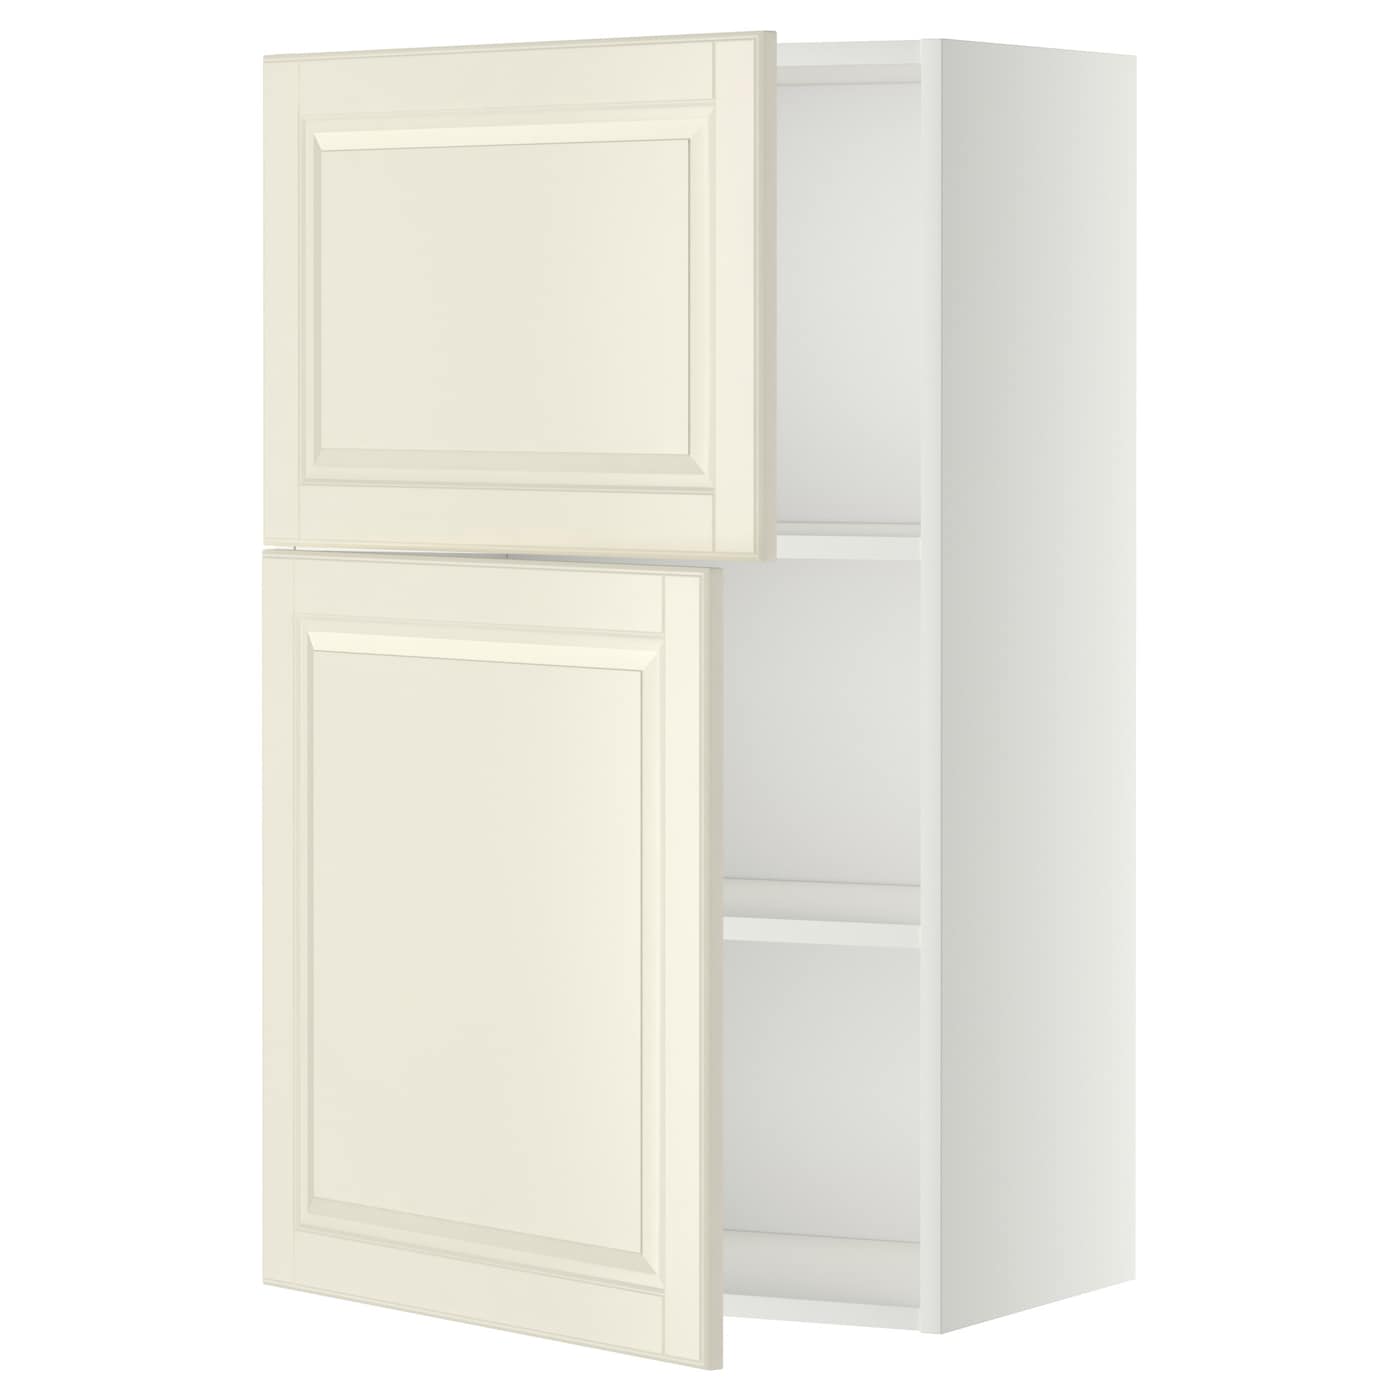 Навесной шкаф с полкой - METOD IKEA/ МЕТОД ИКЕА, 100х60 см,  белый/светло-коричневый